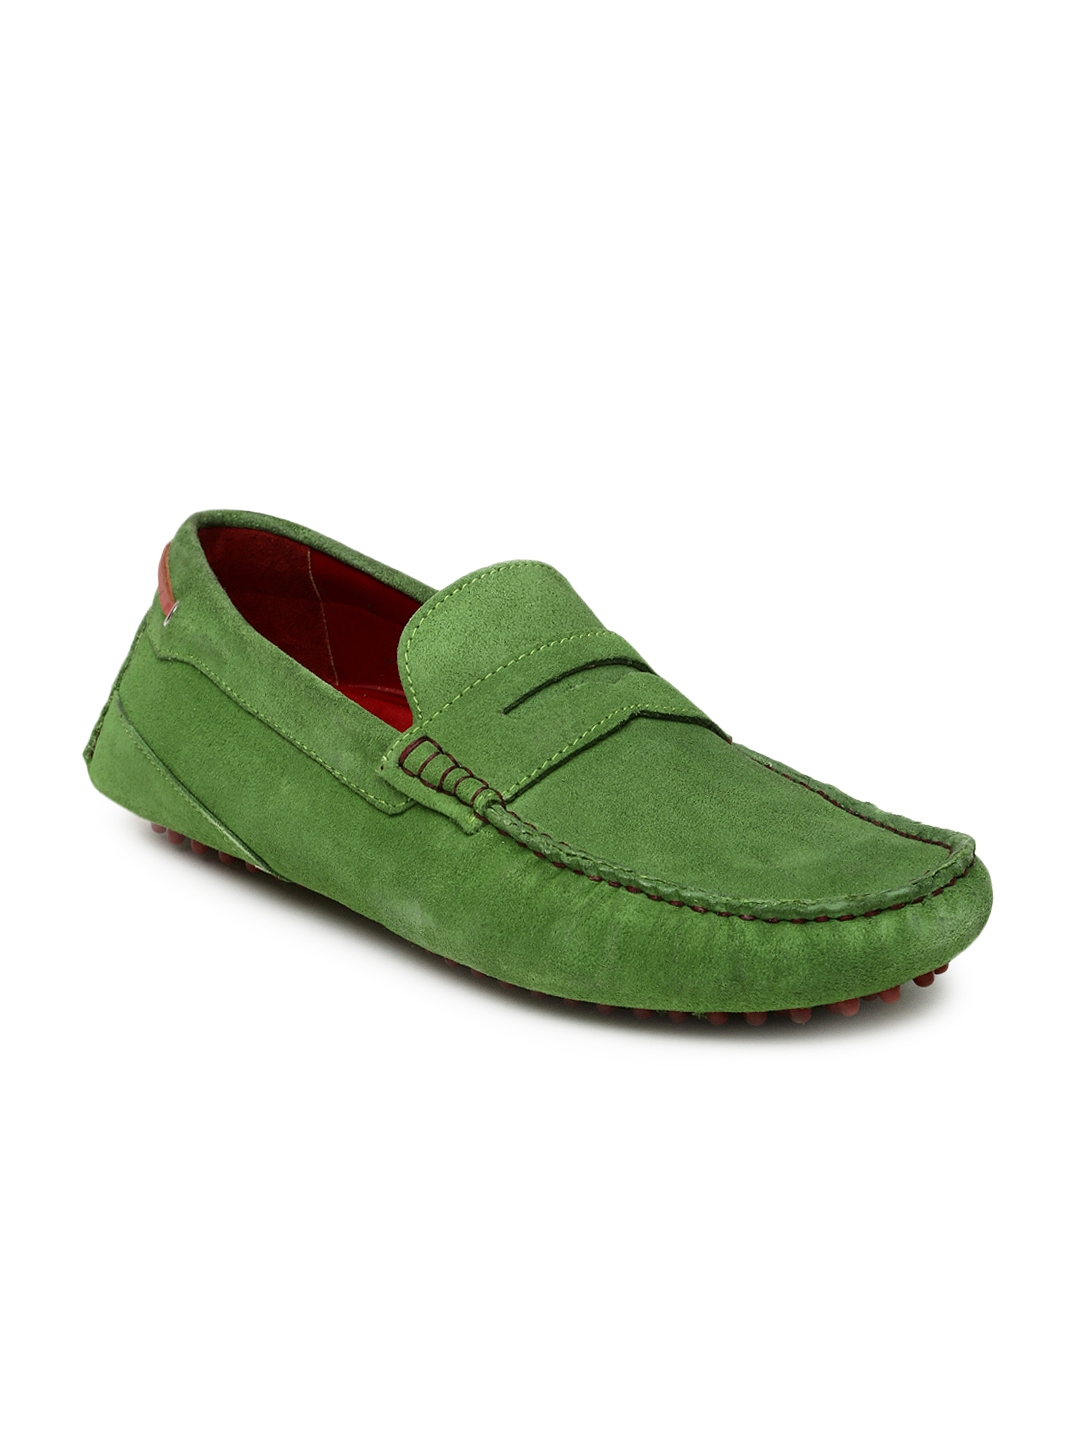 bata loafer shoes online